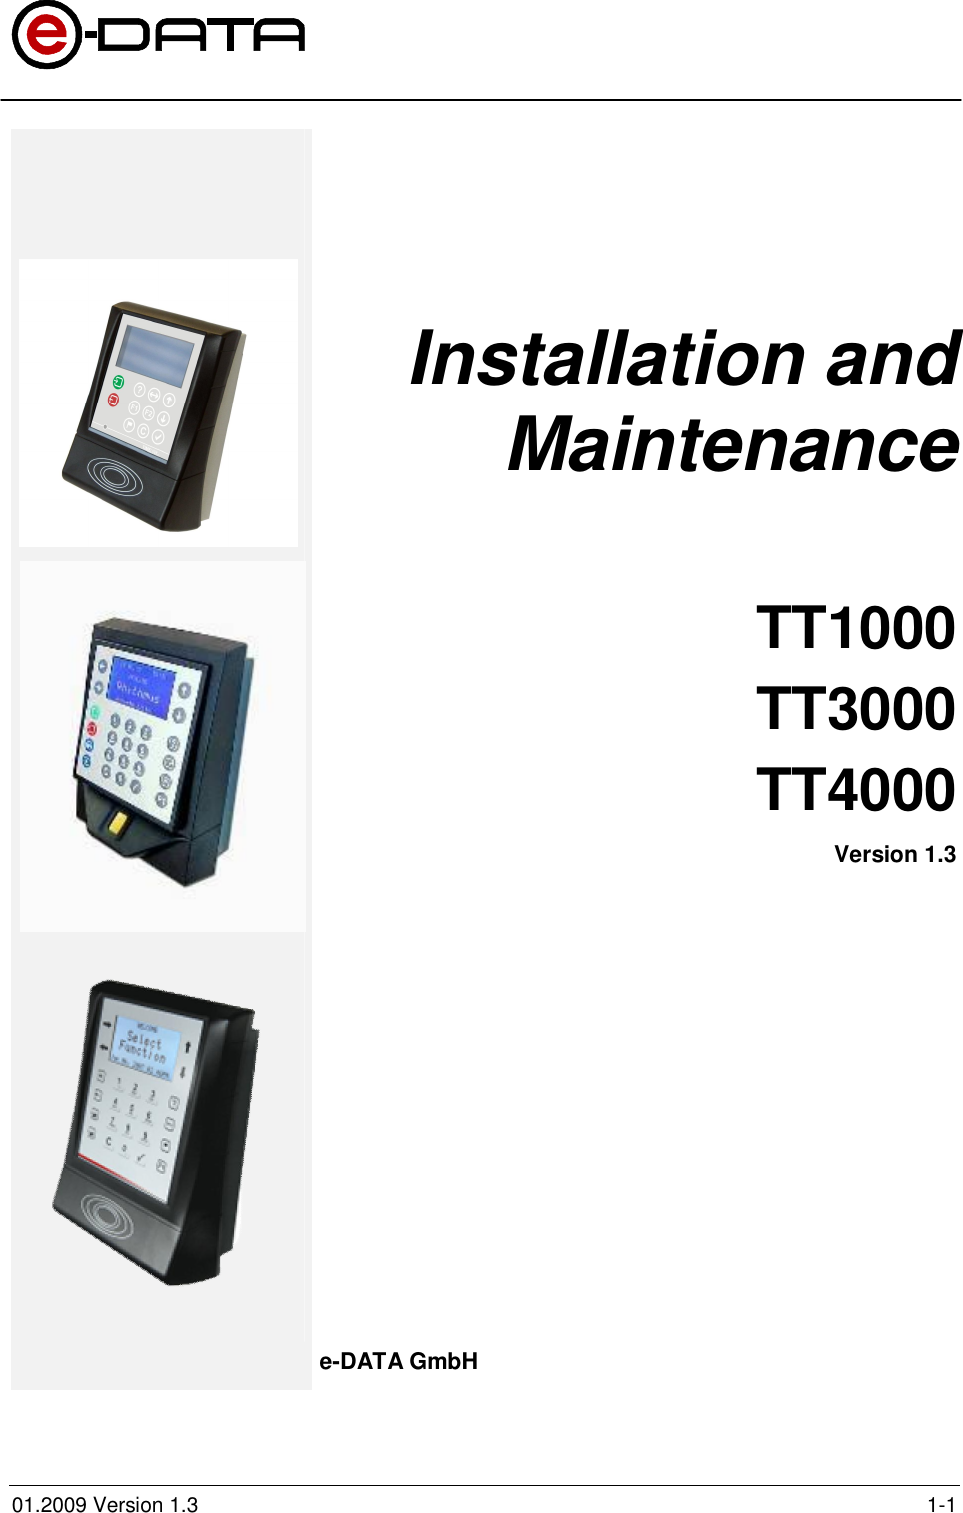 01.2009 Version 1.3 1-1Installation andMaintenanceTT1000TT3000TT4000Version 1.3e-DATA GmbH